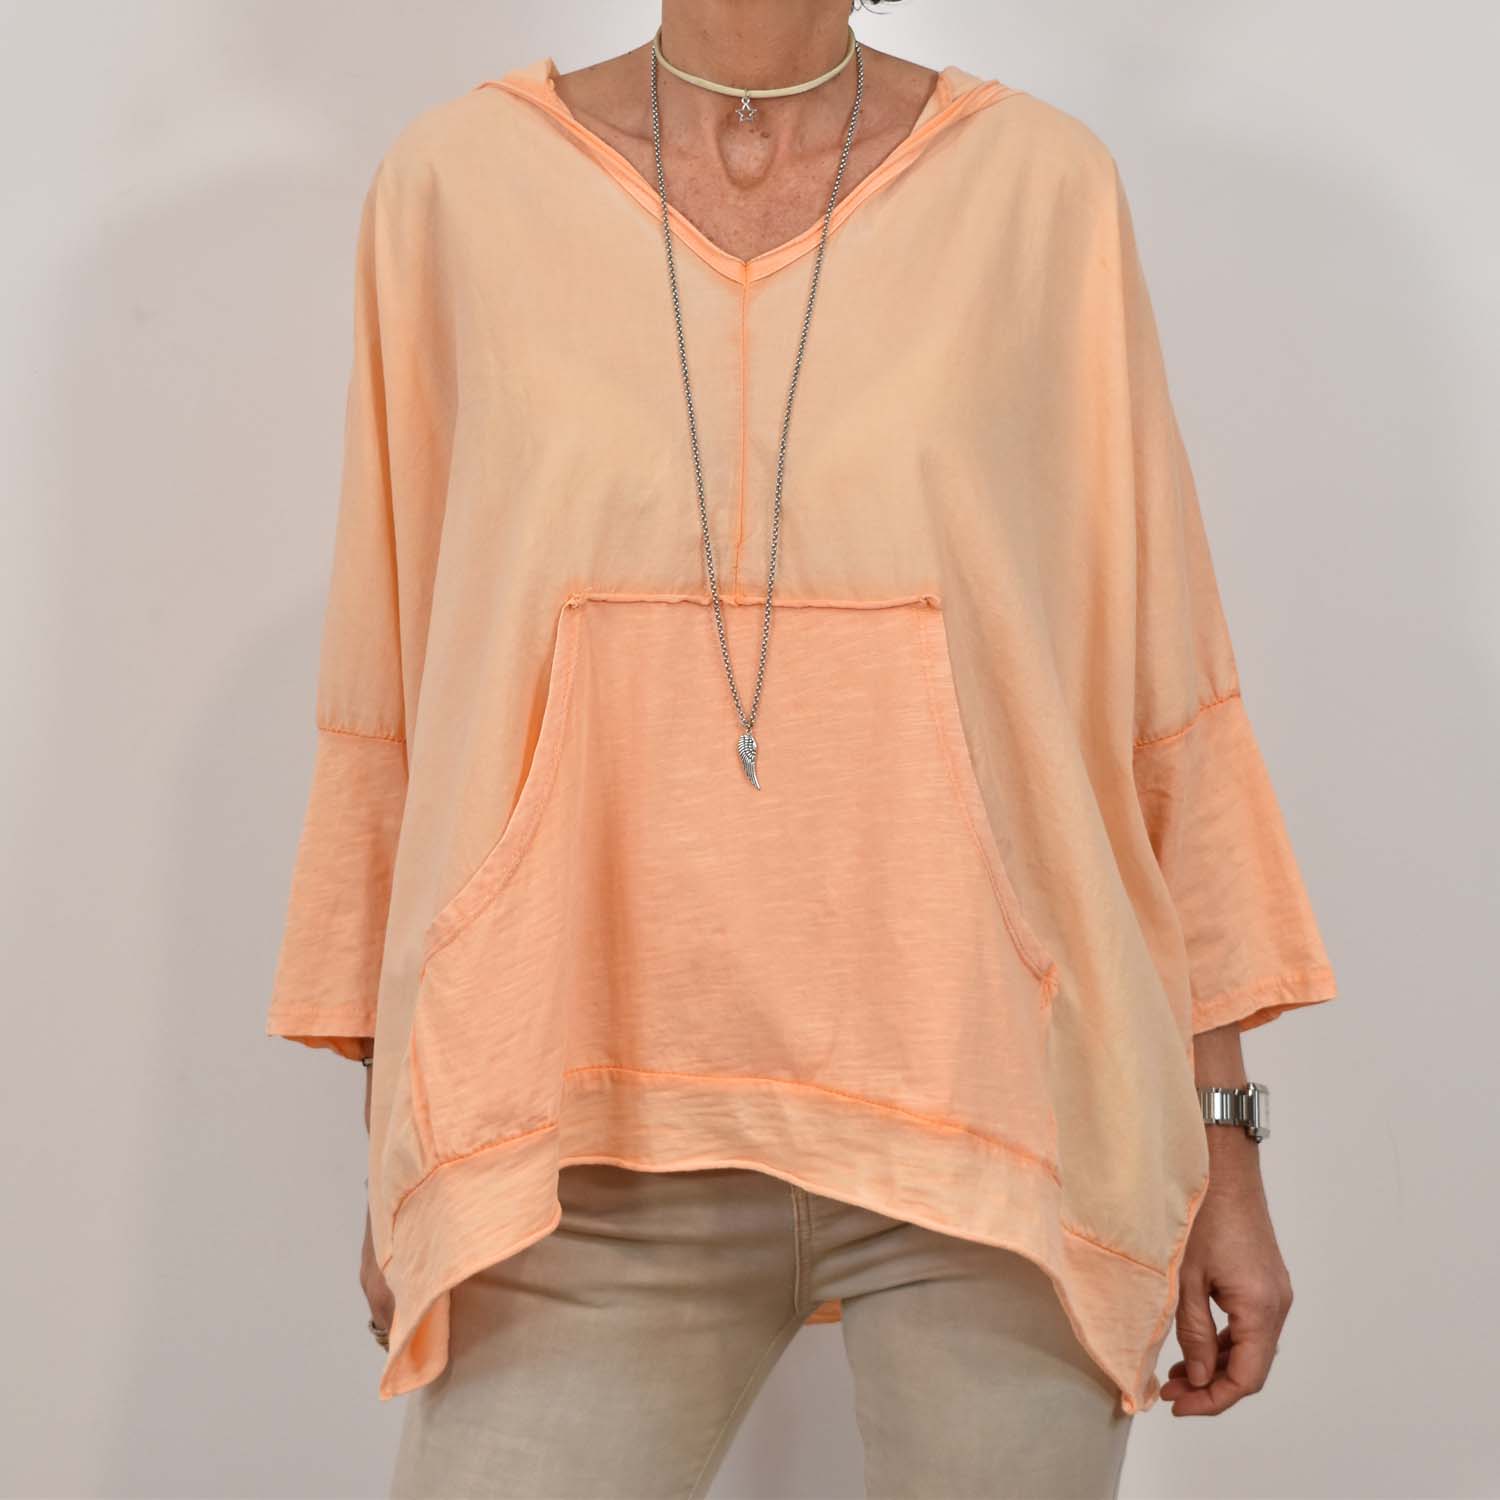 Sweatshirt coutures oversize orange fluor